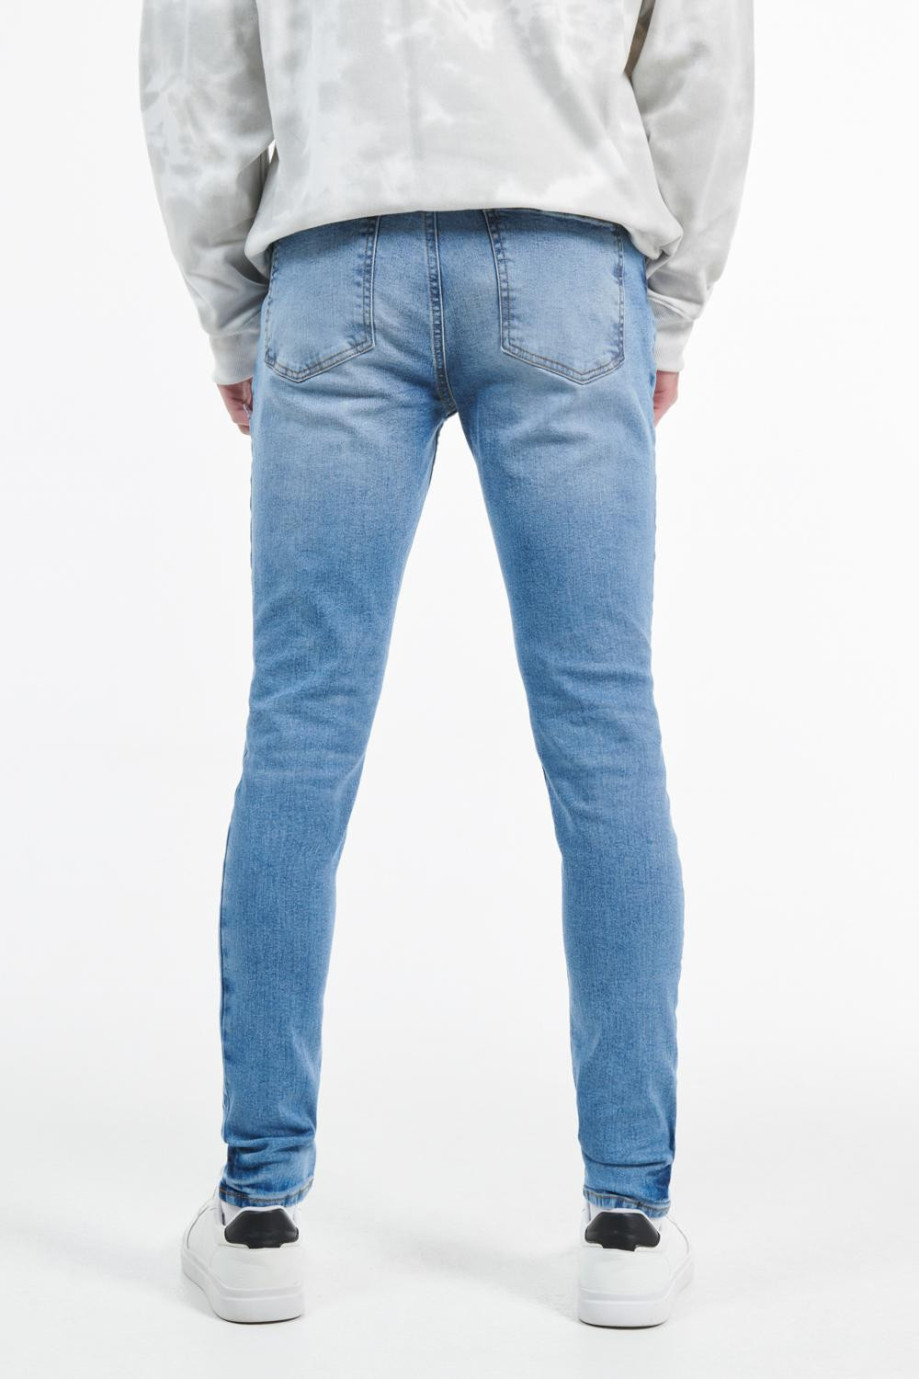 Jean súper skinny azul claro con rotos y diseños de manchas